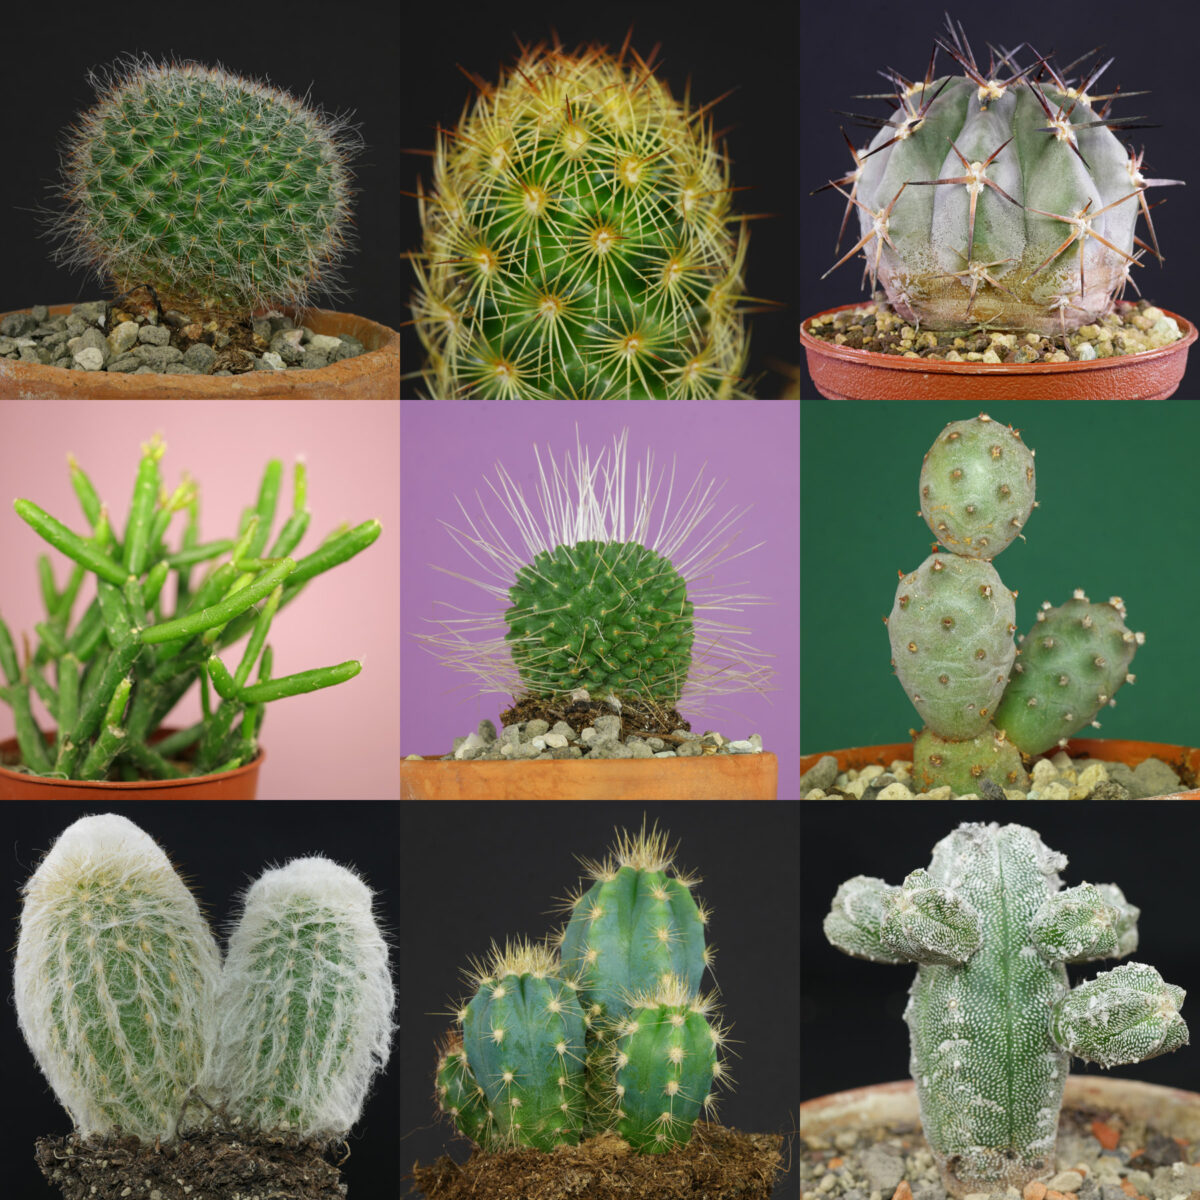 Identifier les cactus